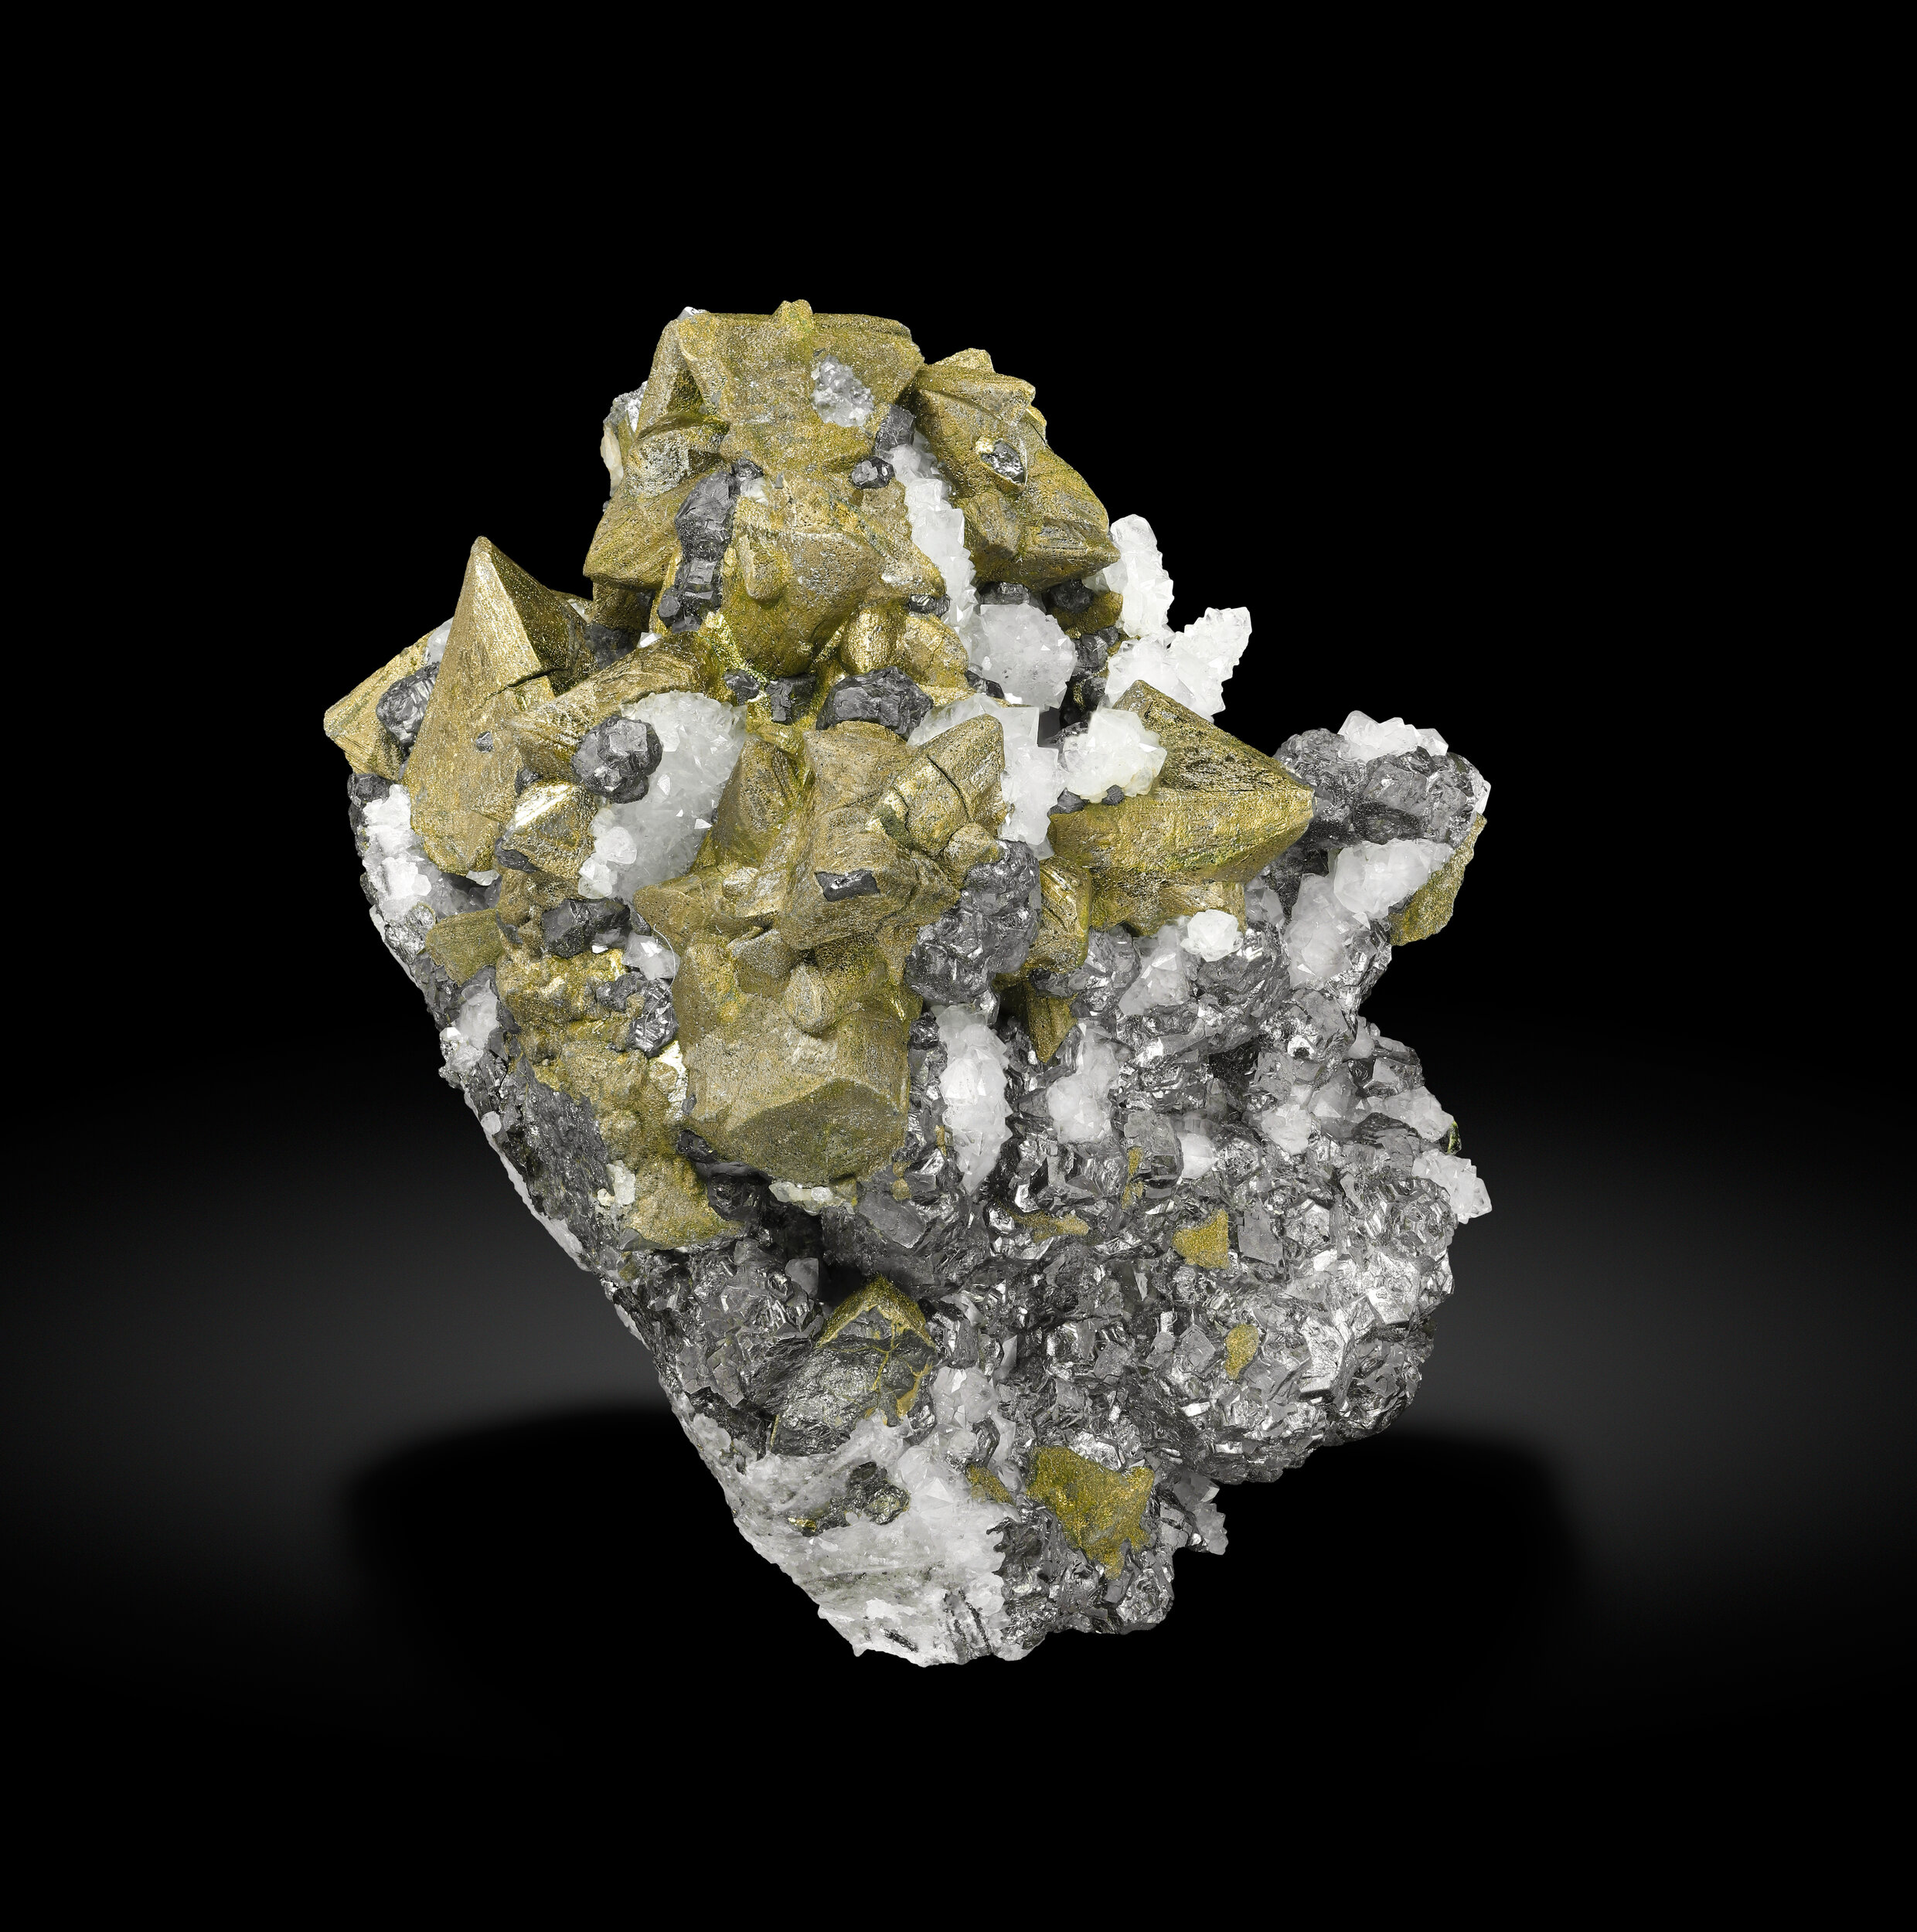 specimens/s_imagesCD2/Chalcopyrite-EBJ47CD2_0677_f.jpg